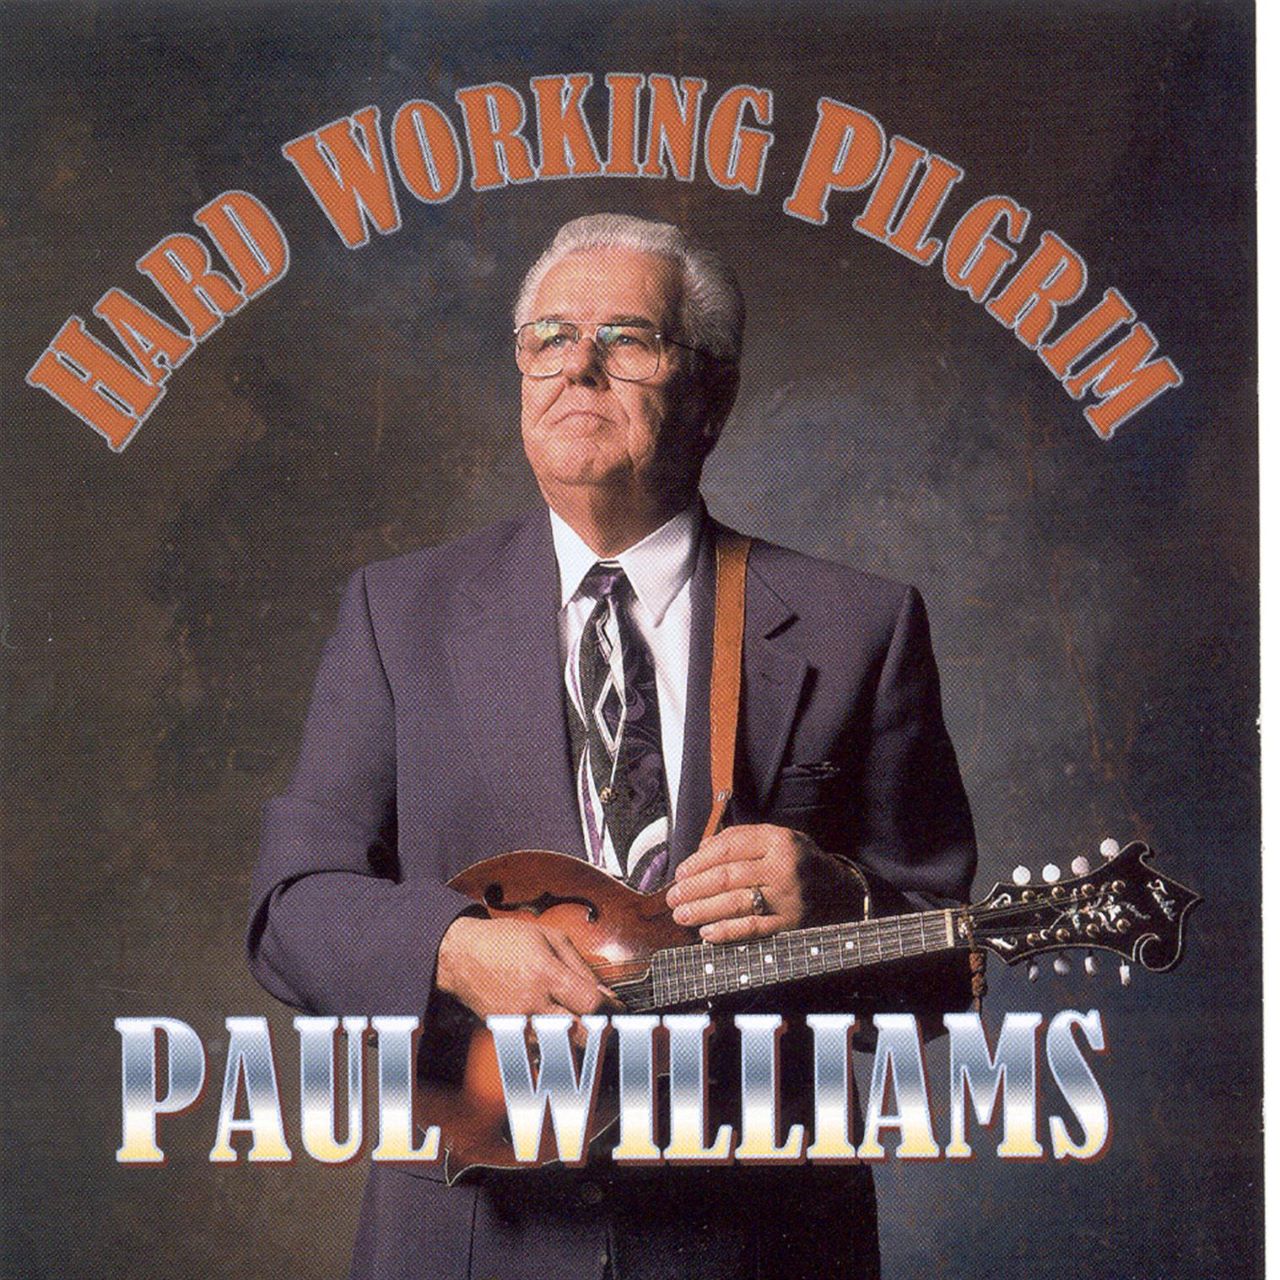 Paul Williams - Hard Working Pilgrim cover album